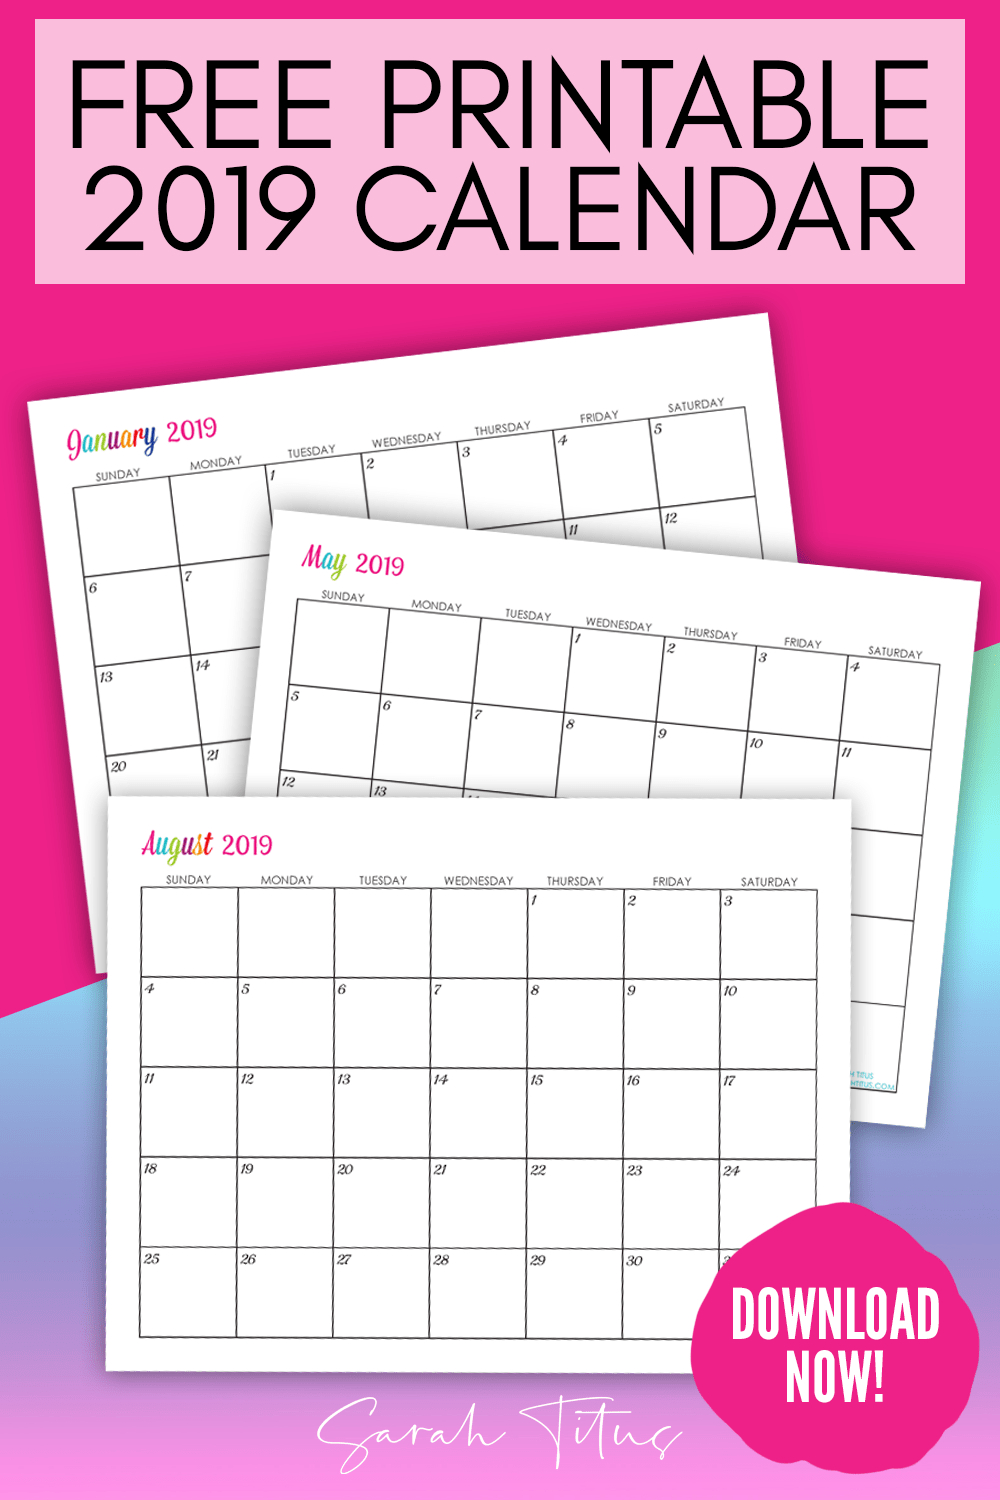 Custom Editable Free Printable 2019 Calendars  Sarah Titus throughout Sarah Titus Calendar